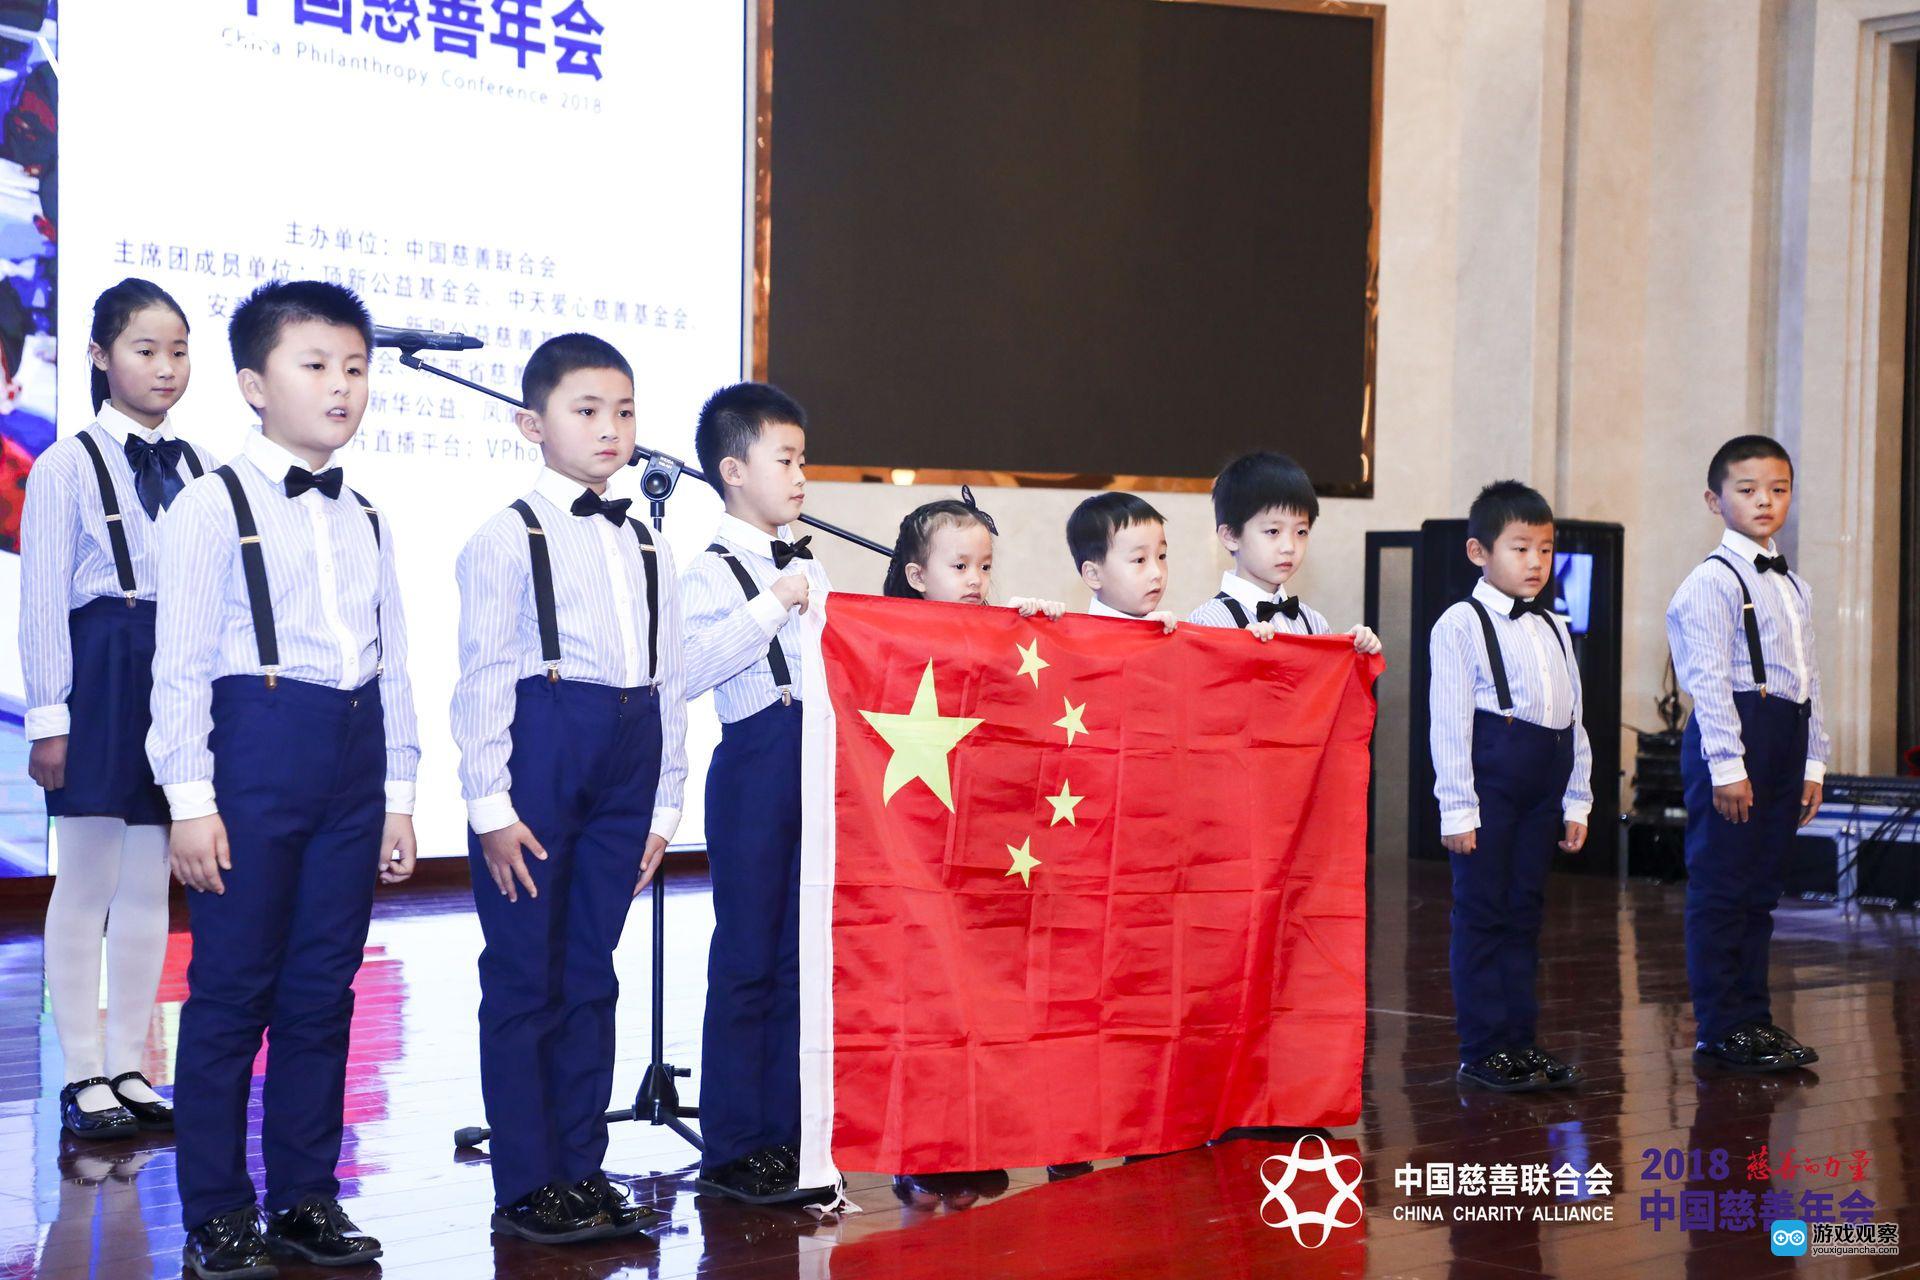 三七互娱加入中国慈善联合会 践行社会责任与使命